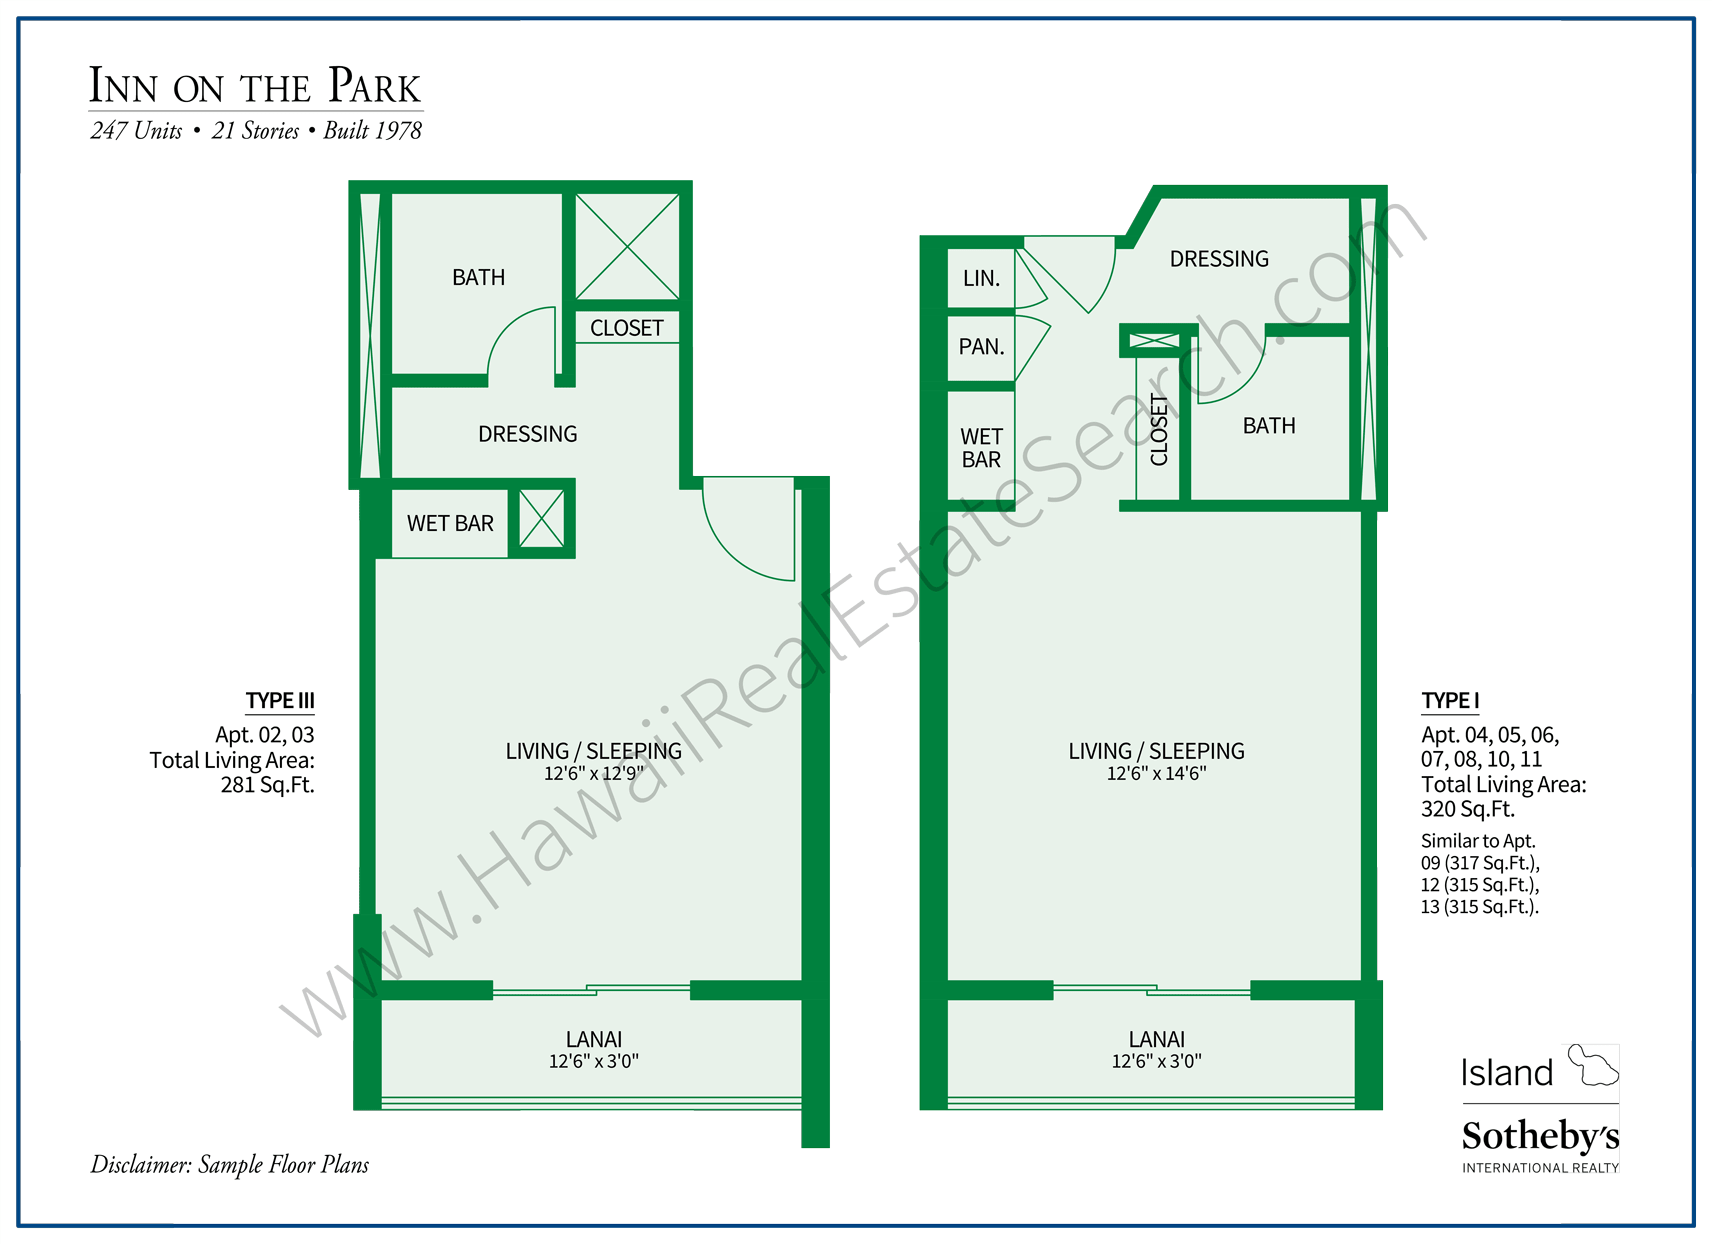 Inn on the Park Floor Plans